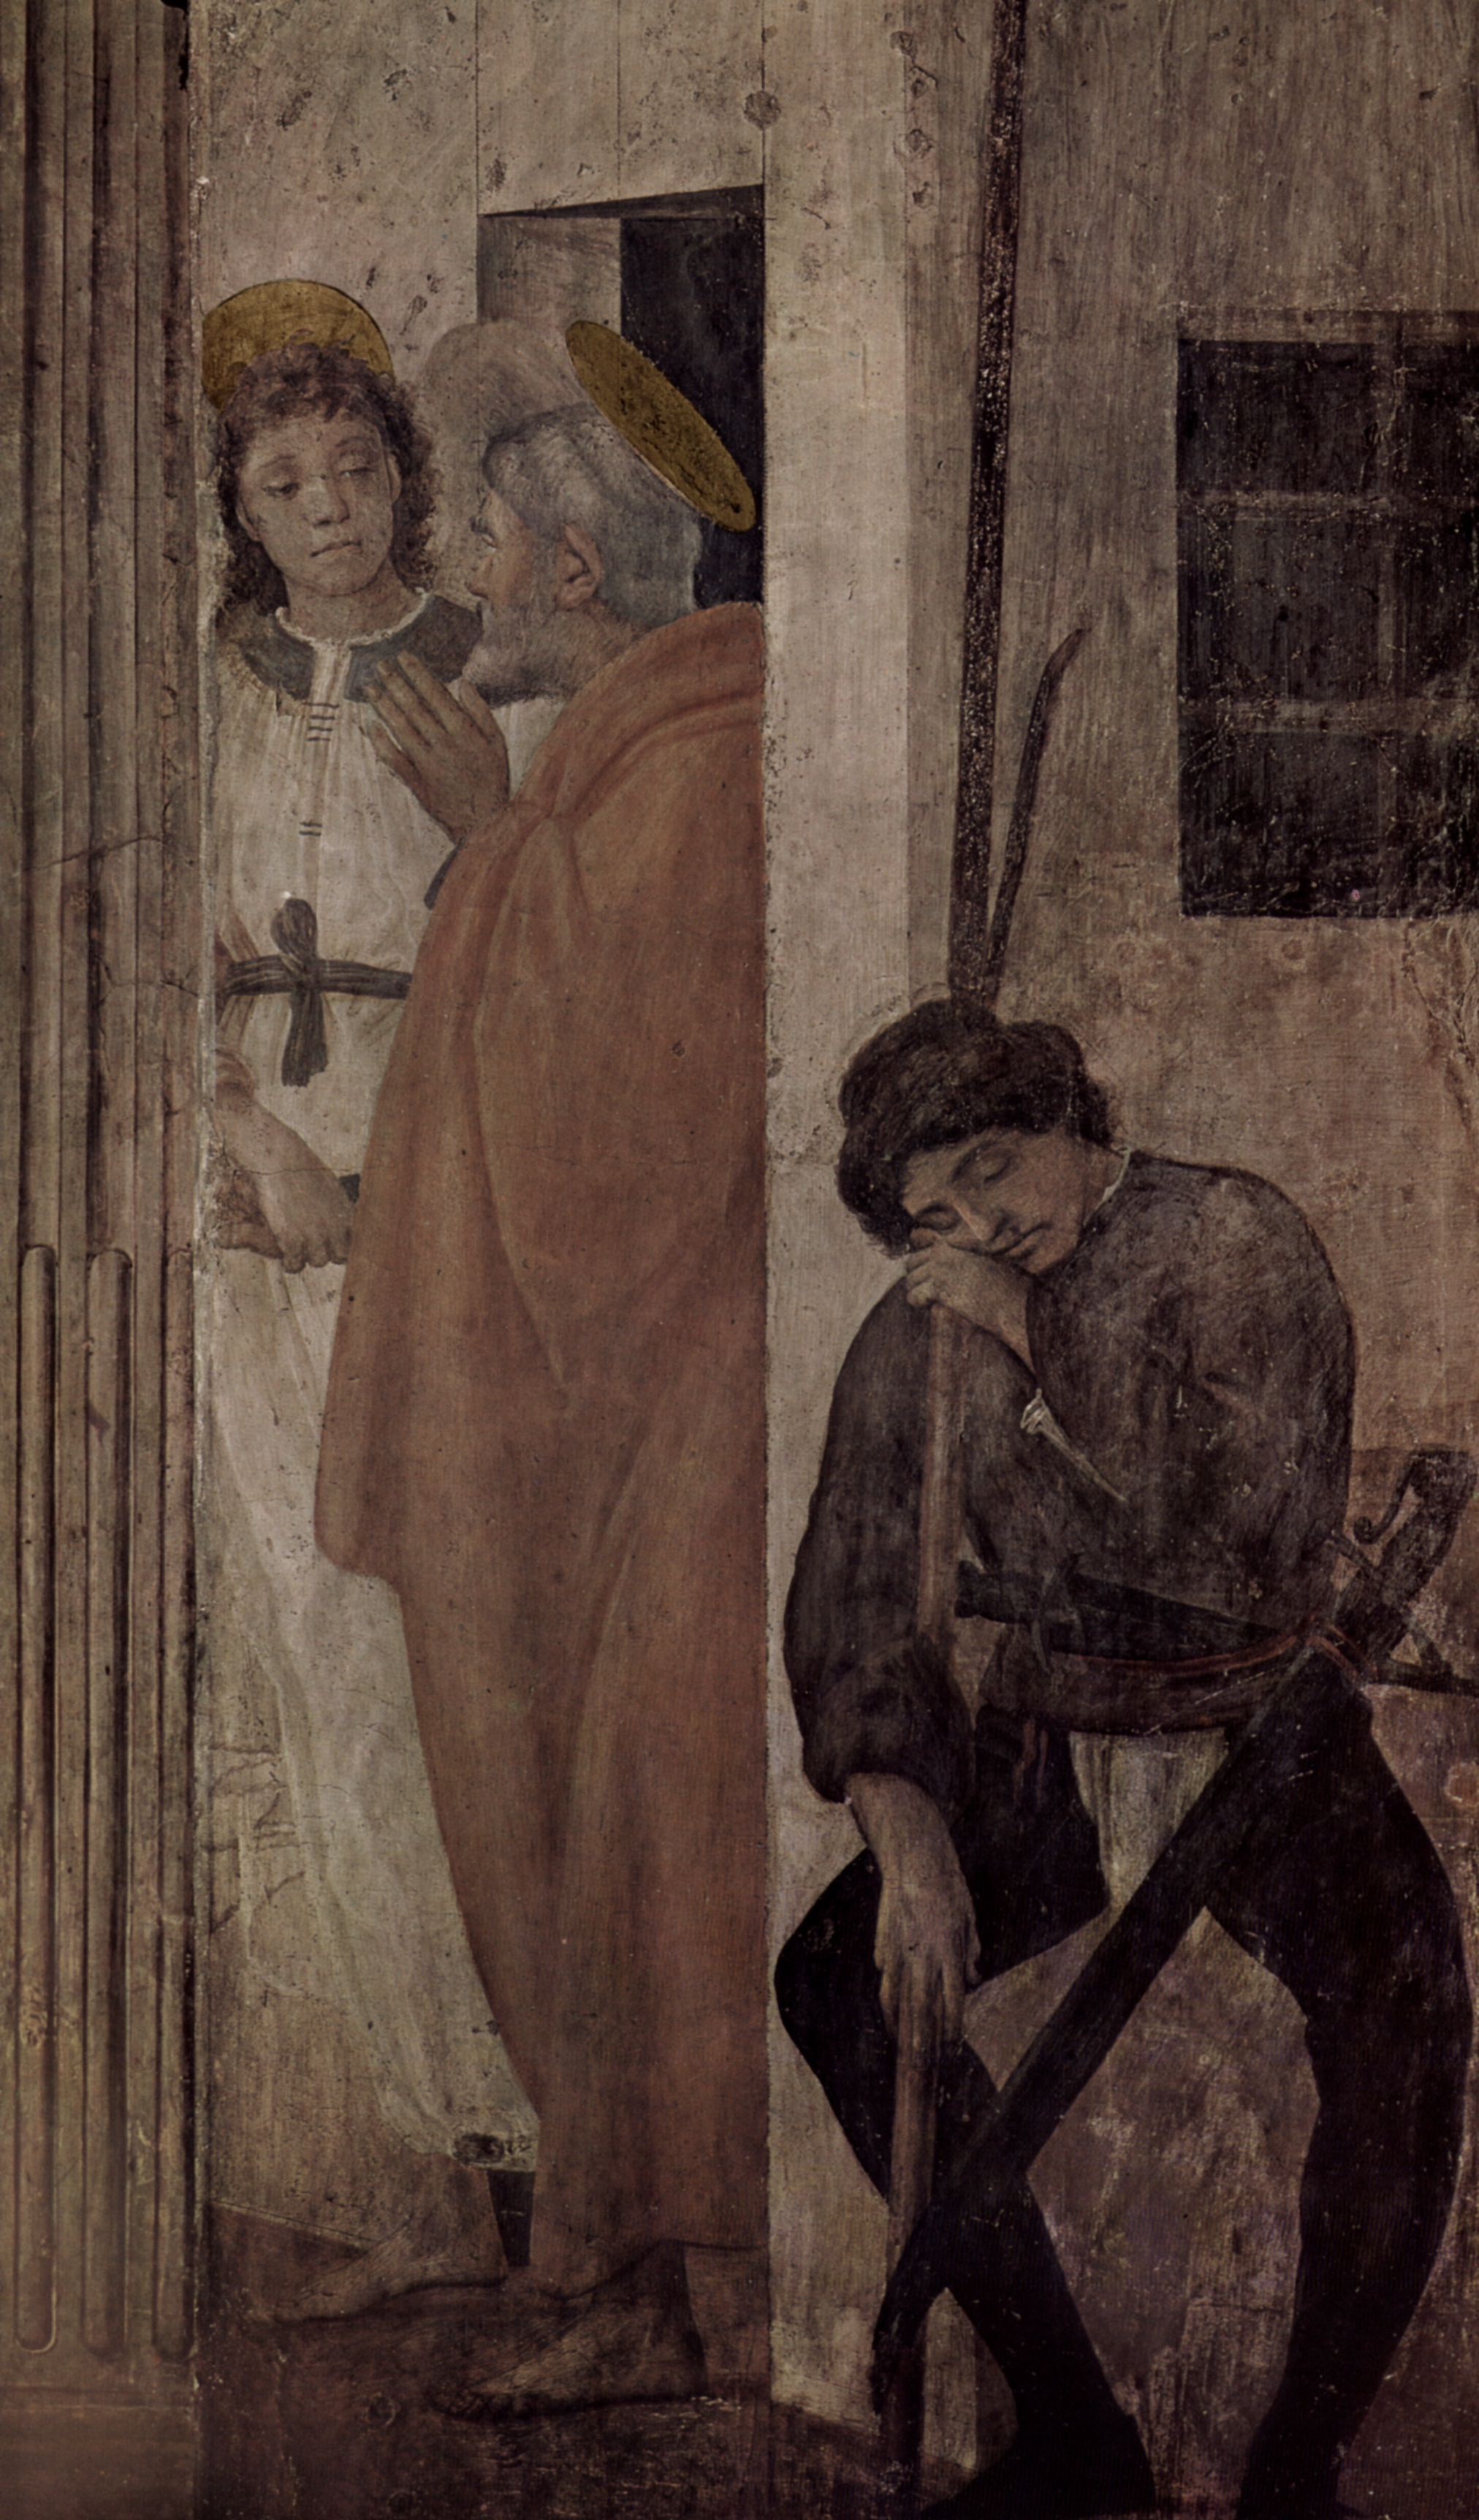 Filippino Lippi: Freskenzyklus der Brancacci-Kapelle in Santa Maria del Carmine in Florenz, Szene: Befreiung des Hl. Petrus aus dem Kerker durch einen Engel